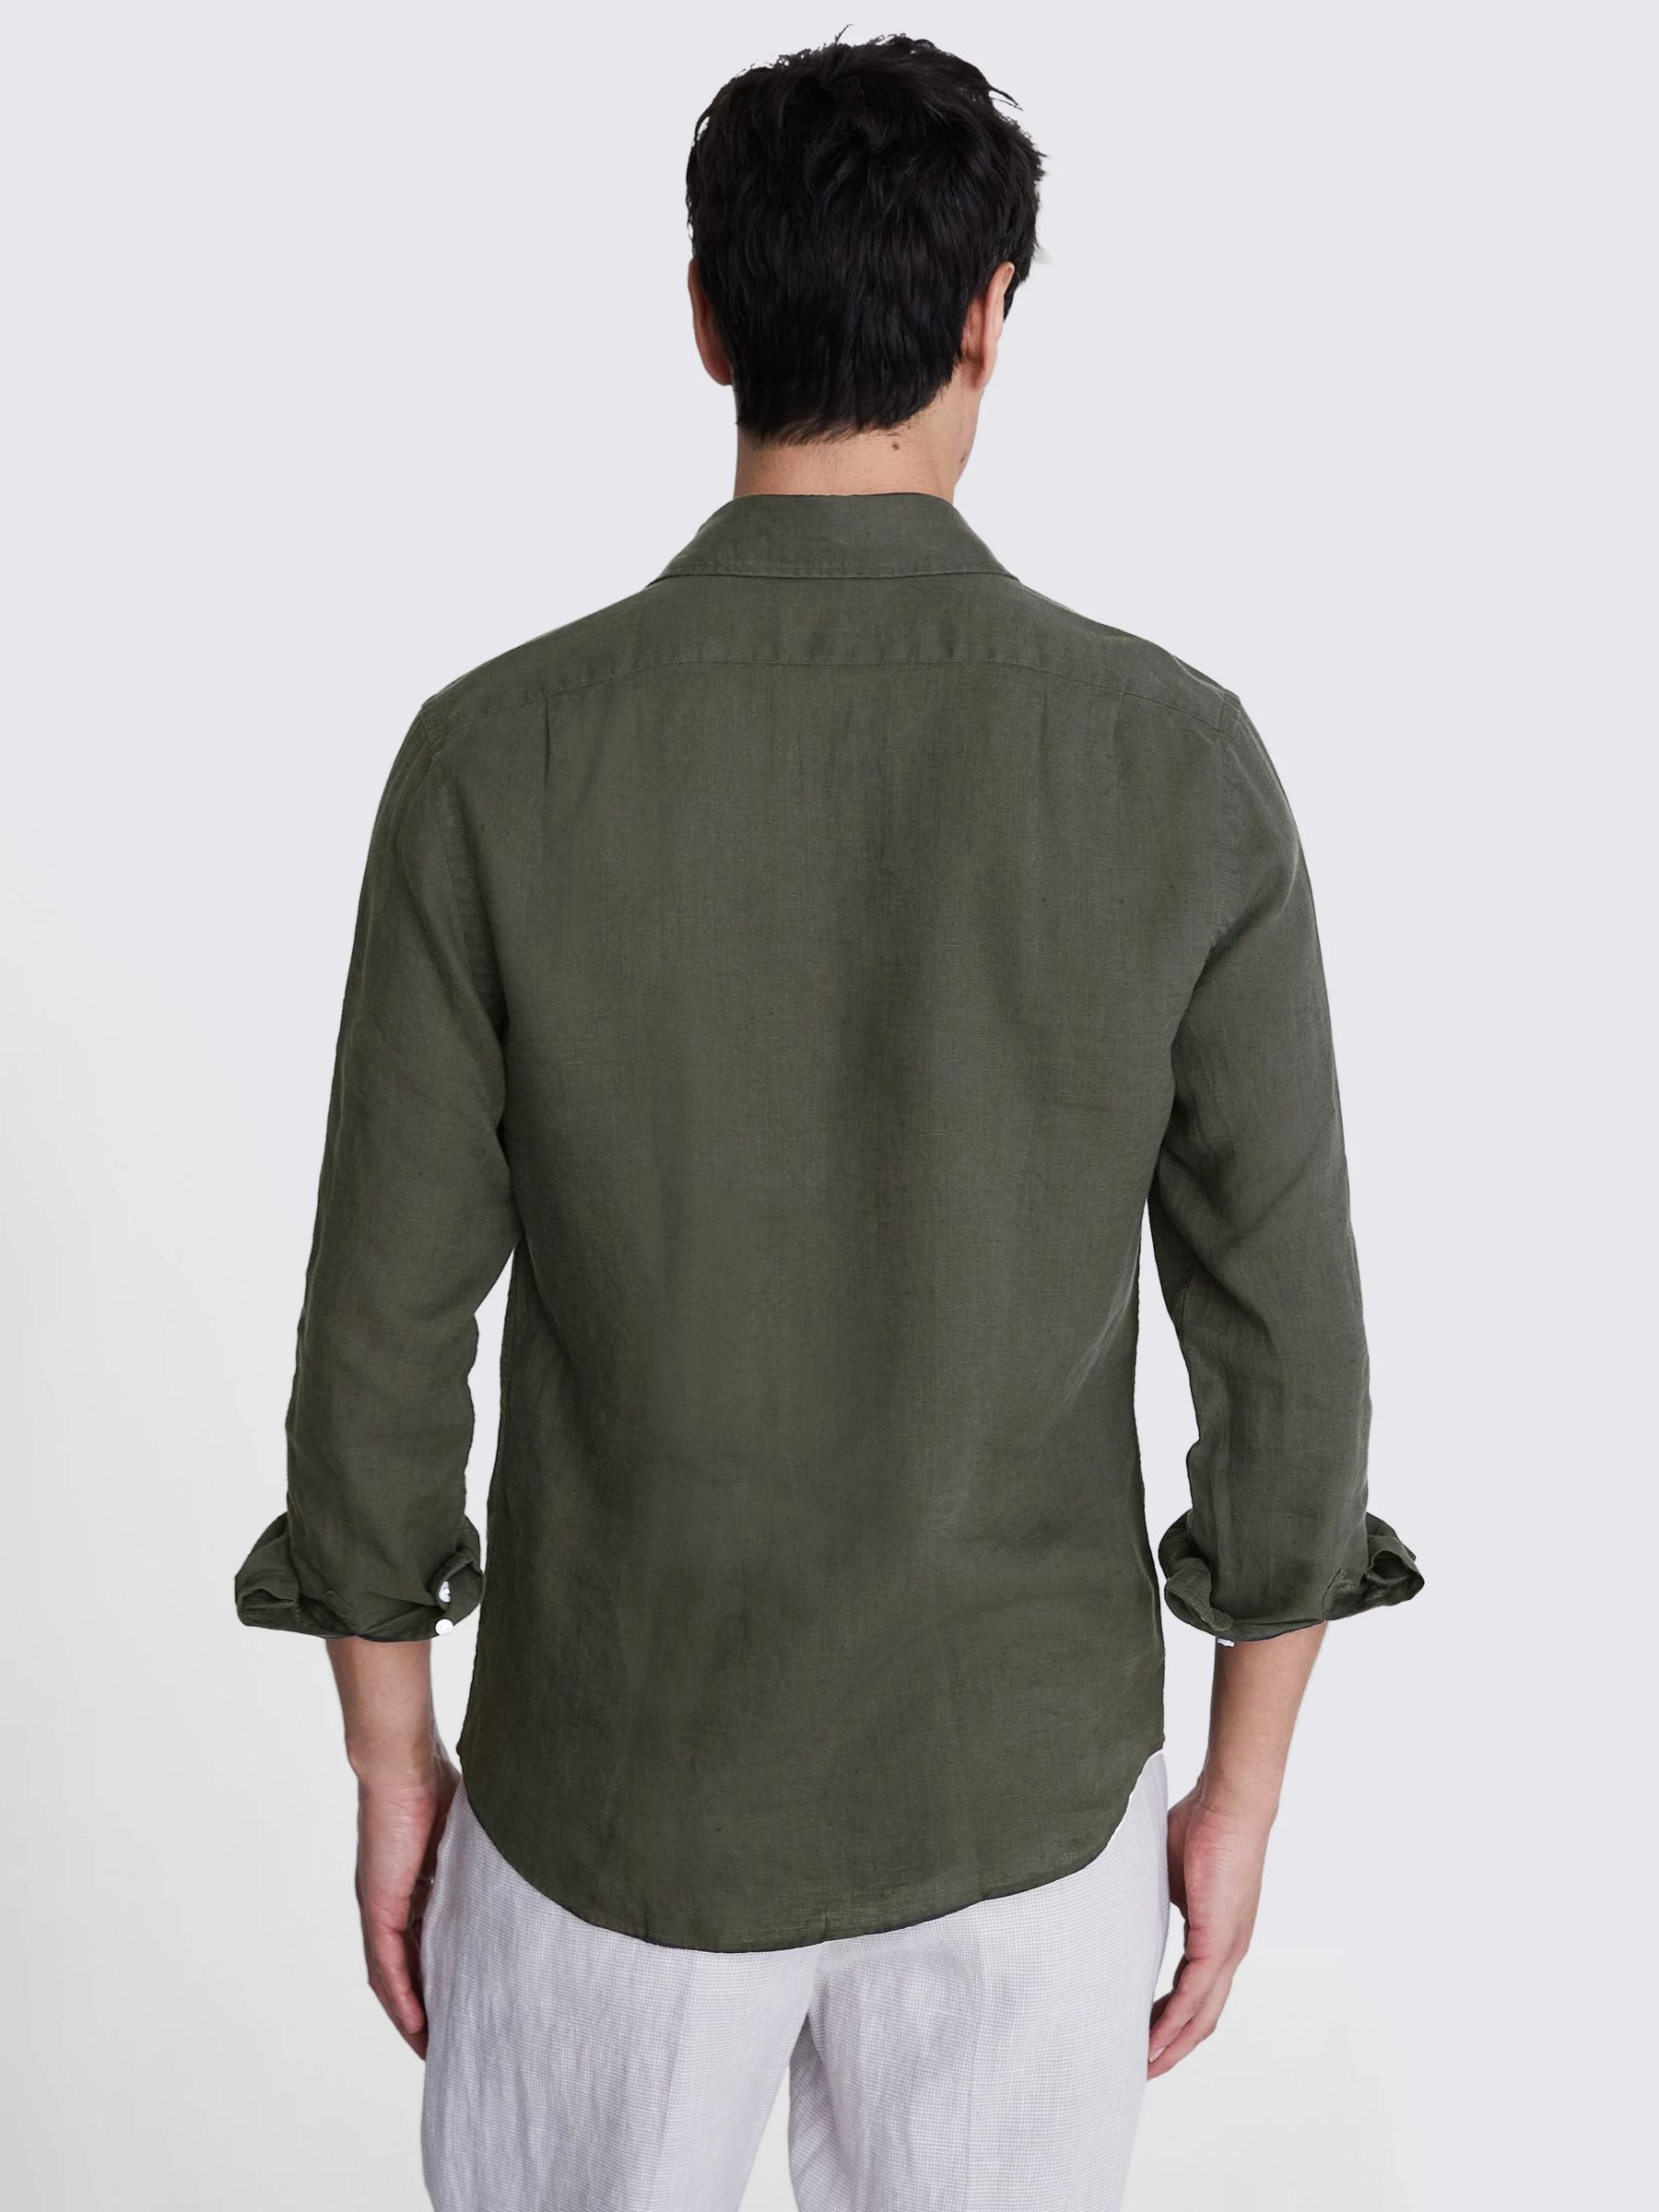 Moss Tailored Fit Linen Long Sleeve Shirt, Khaki, S